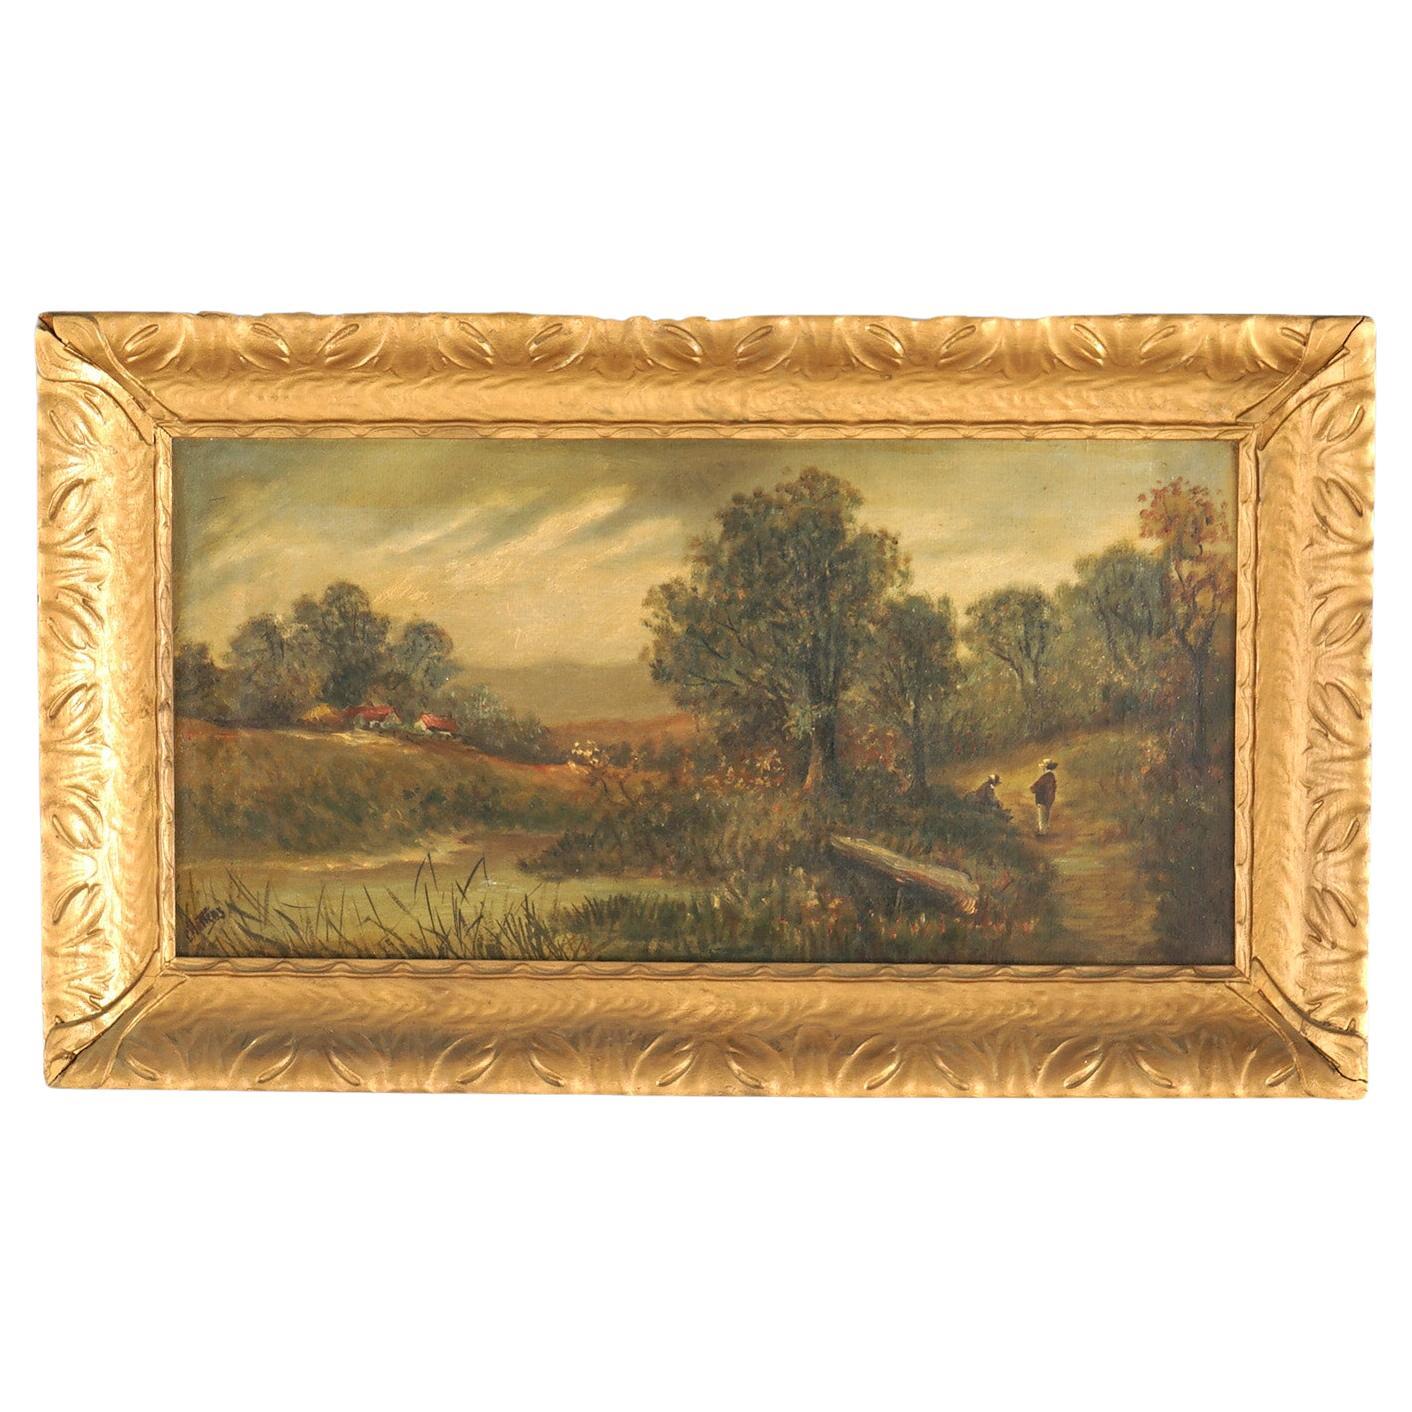 Chatten Oil on Canvas Landscape of Rural Village Scene, Framed, C1890